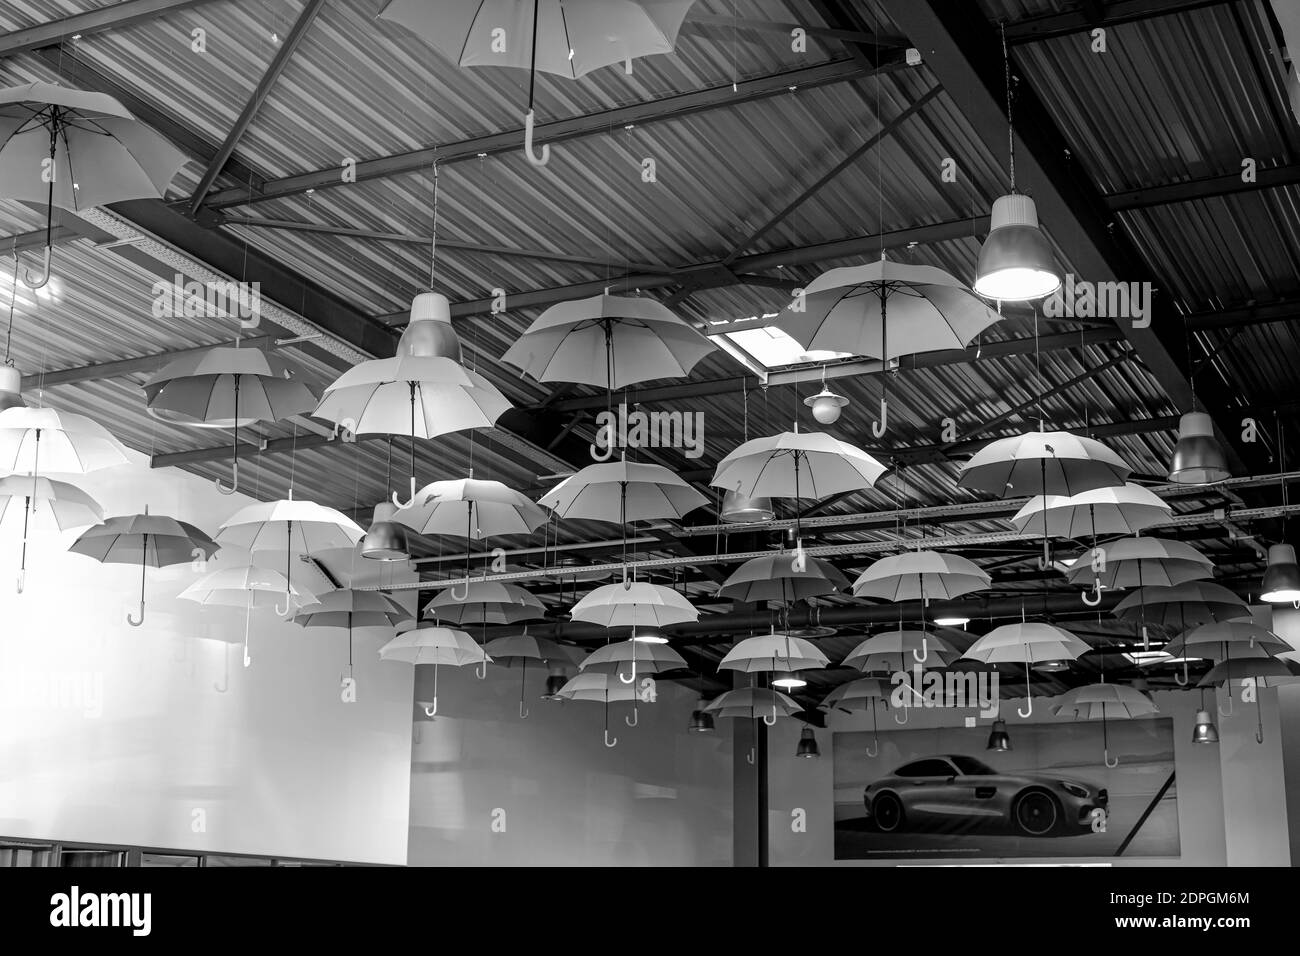 Antibes, France 19.11.2020 divers parasols suspendus sous le plafond. Photo en noir et blanc. Photo de haute qualité Banque D'Images